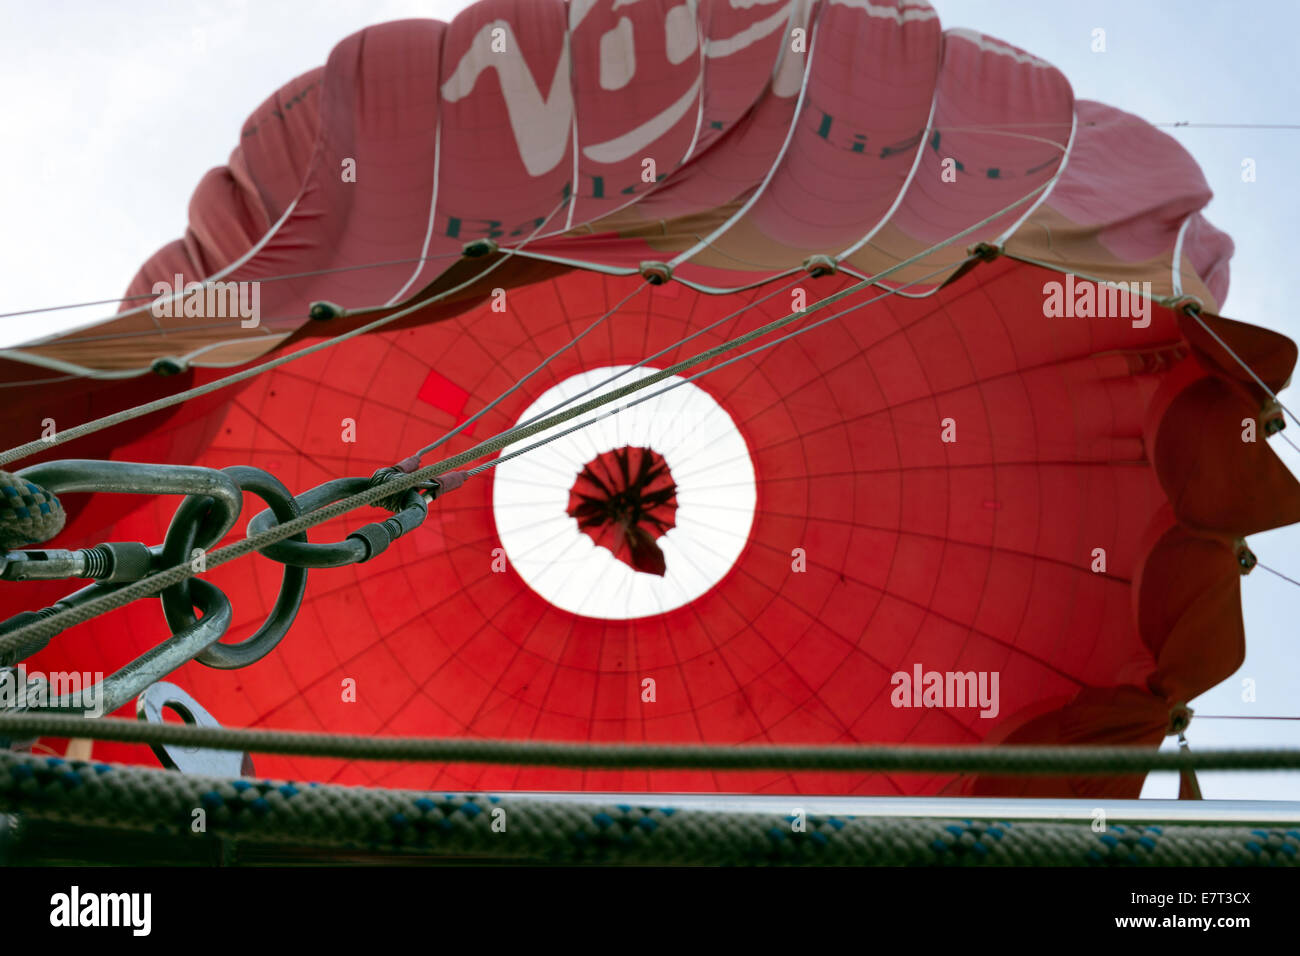 L'ouverture de la valve parachute dans un ballon à air chaud pour en ordre décroissant, Shropshire, Angleterre Banque D'Images